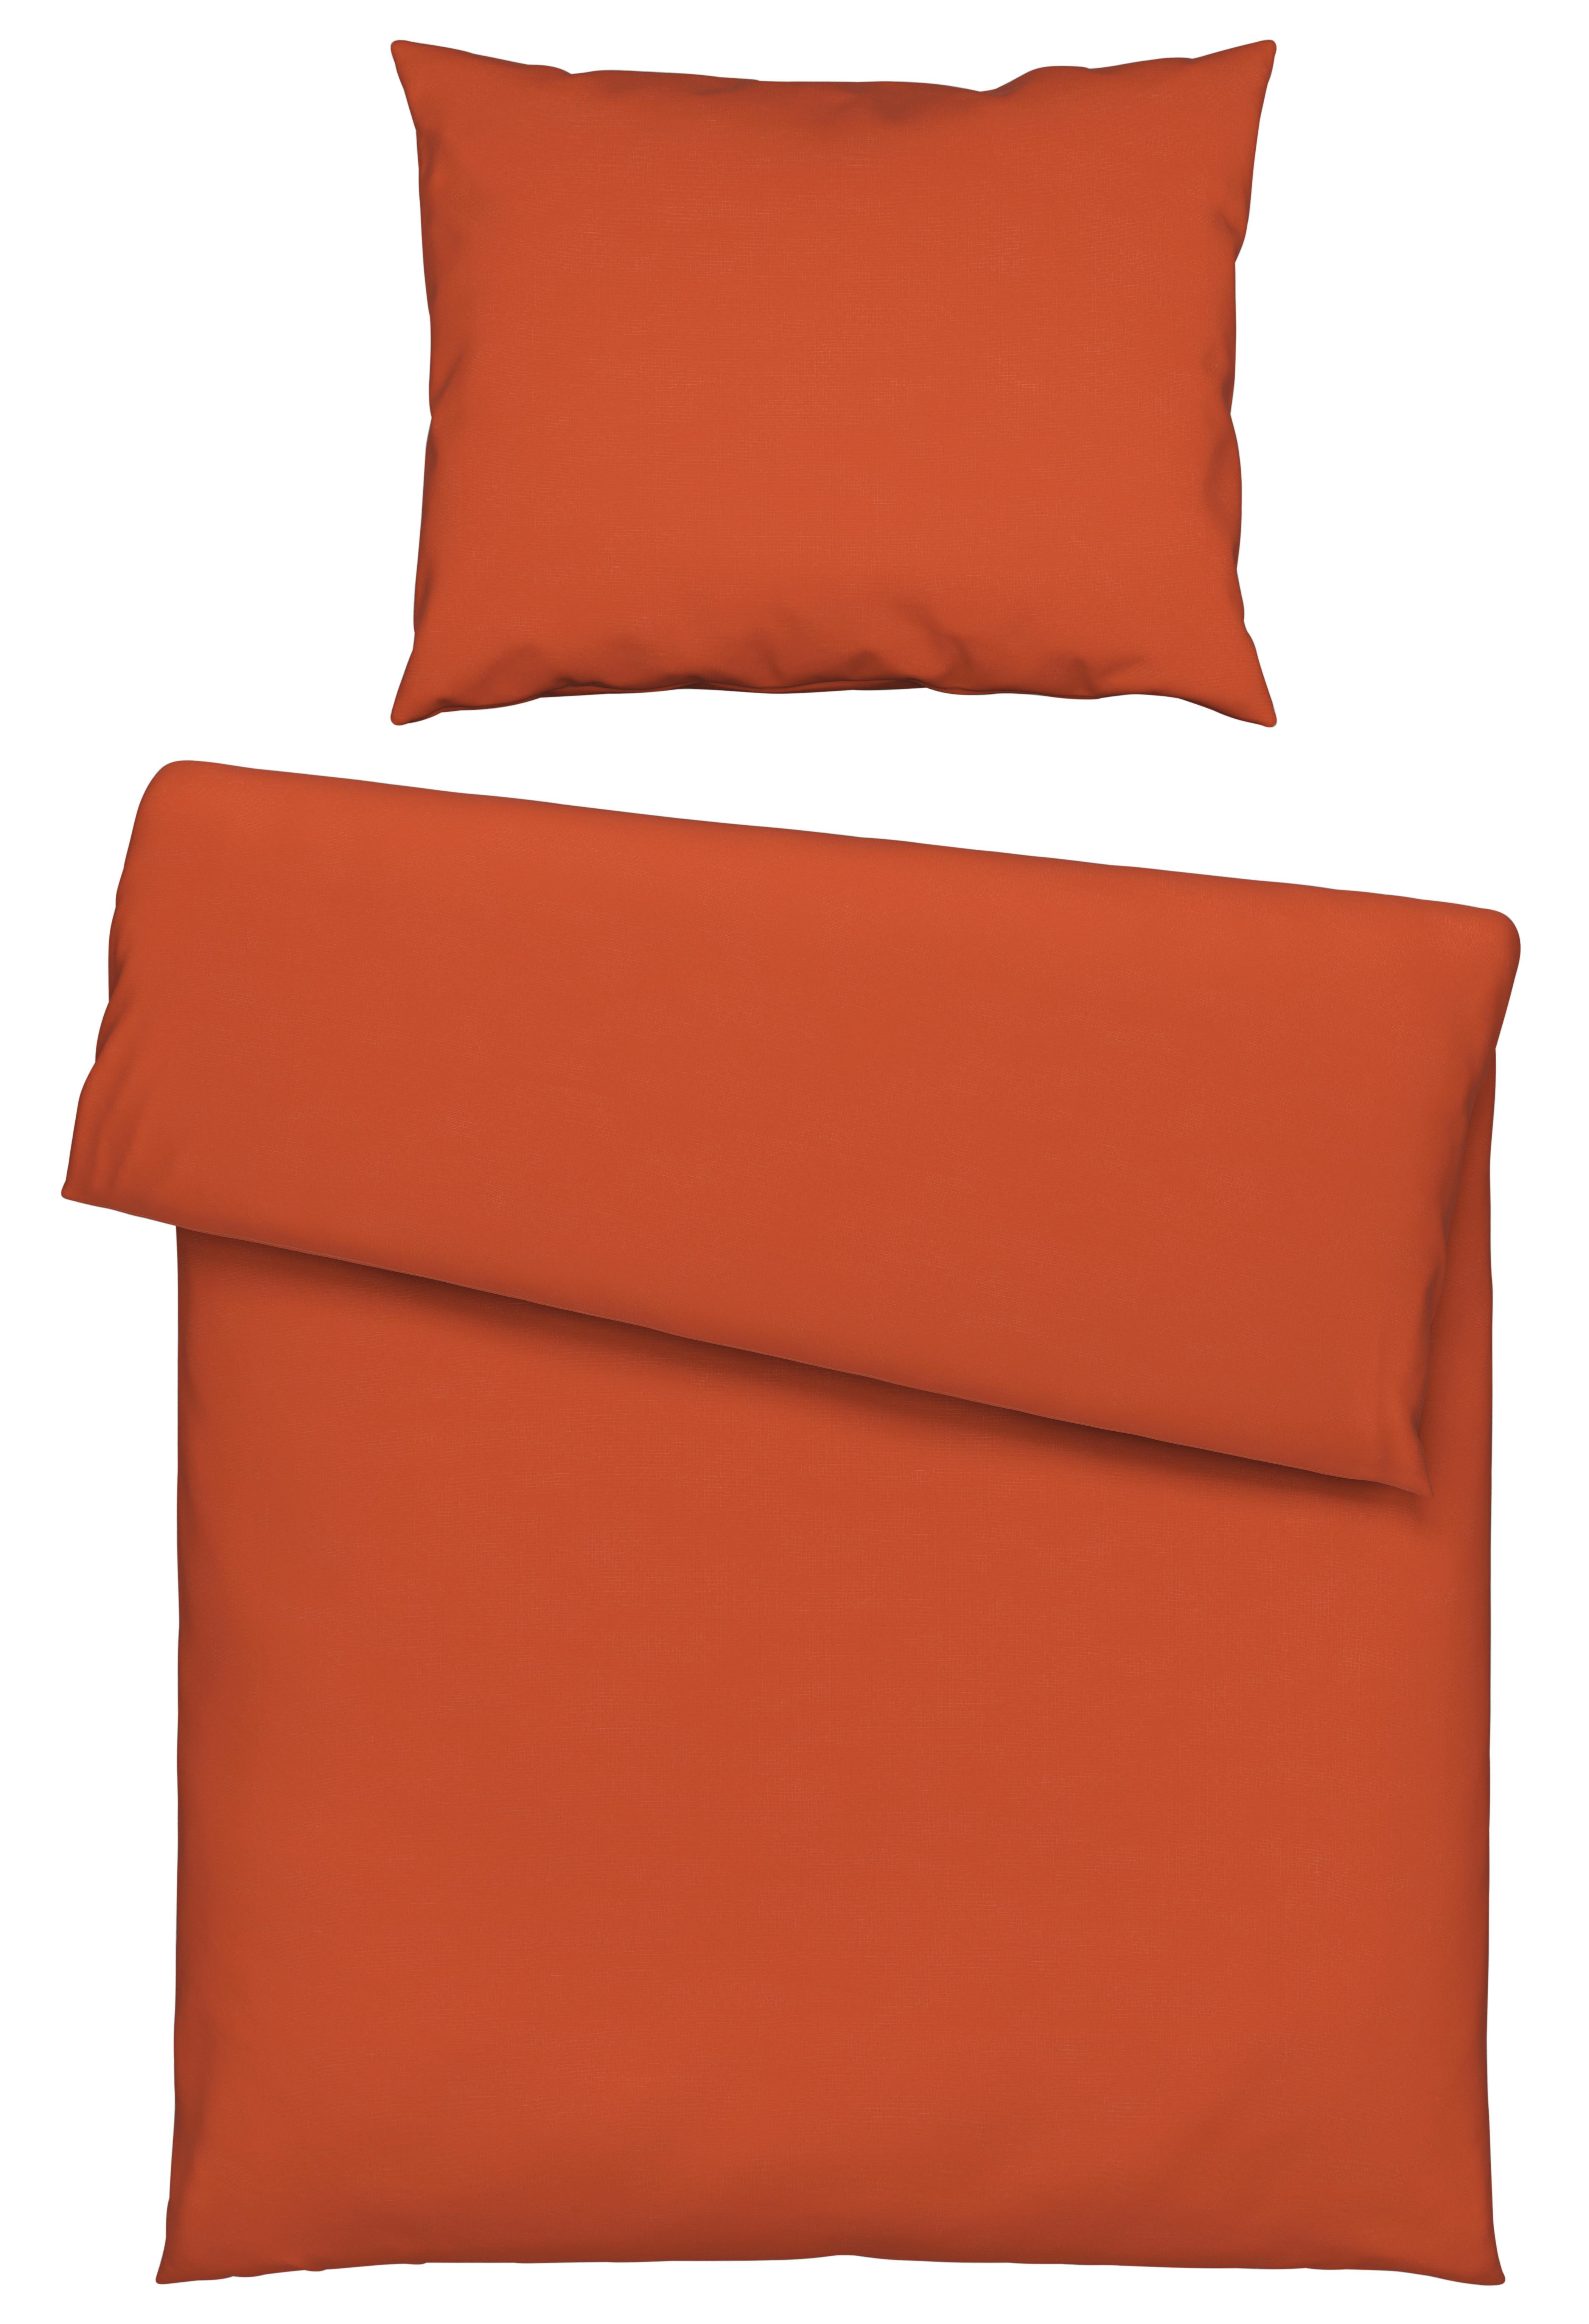 Lenjerie de pat Iris - portocaliu, textil (140/200cm) - Modern Living